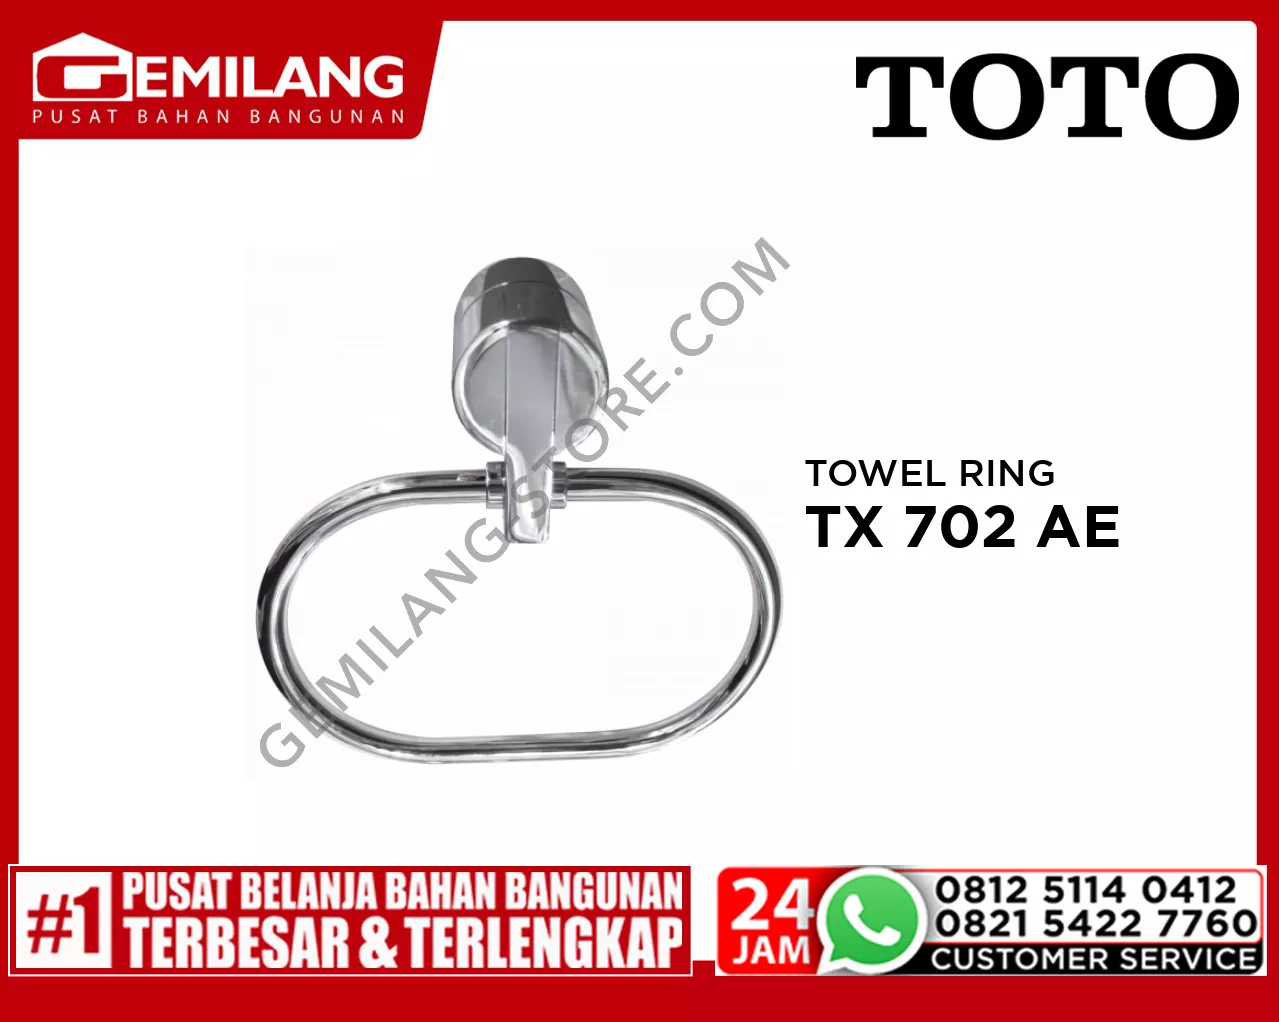 TOTO TOWEL RING TX 702 AE